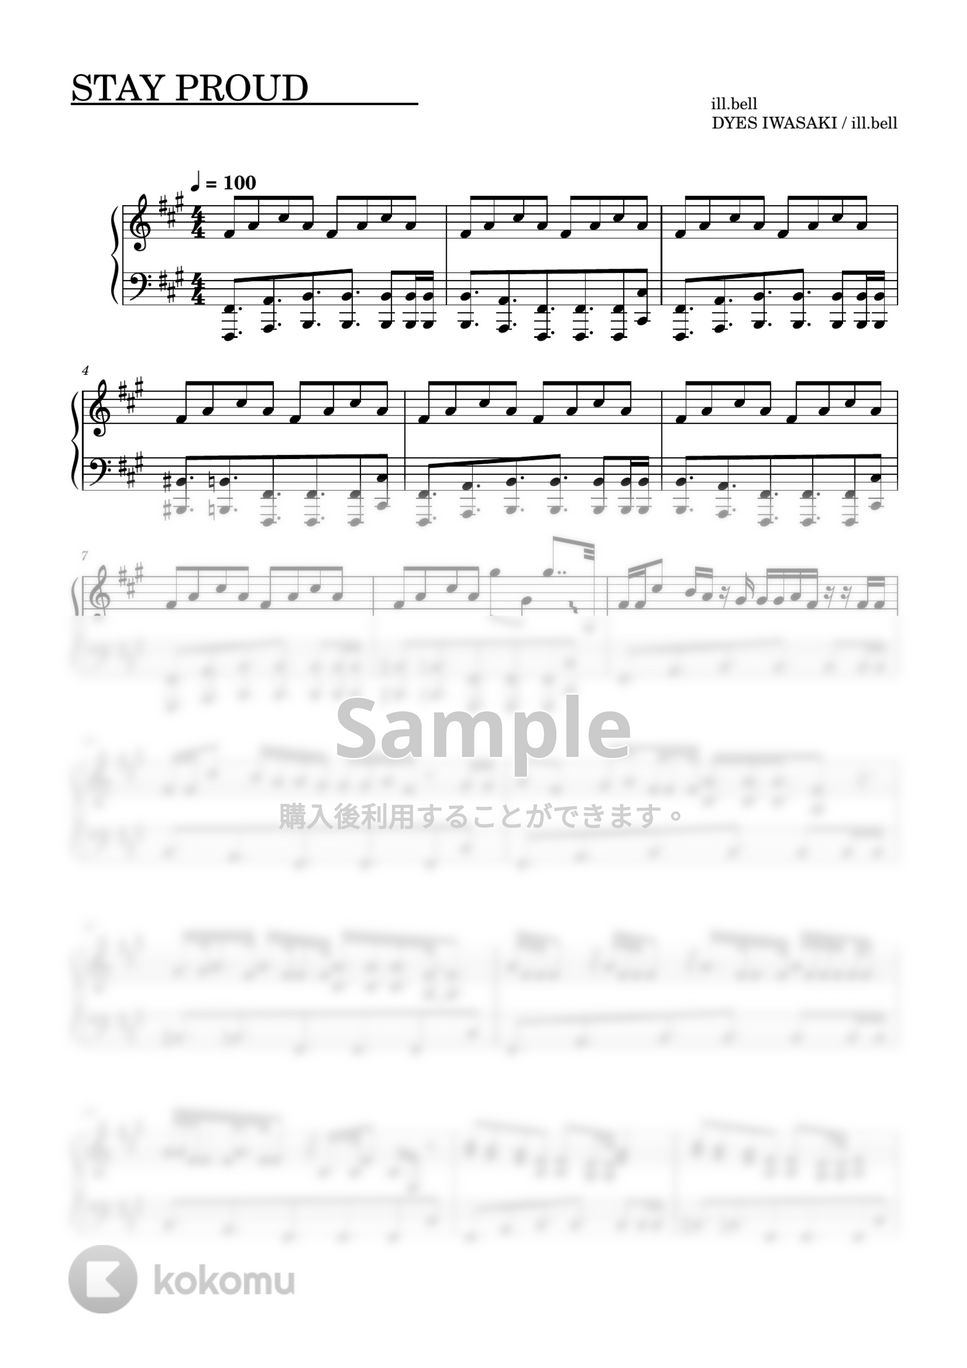 すとぷり - STAY PROUD (ピアノソロ譜) by 萌やし